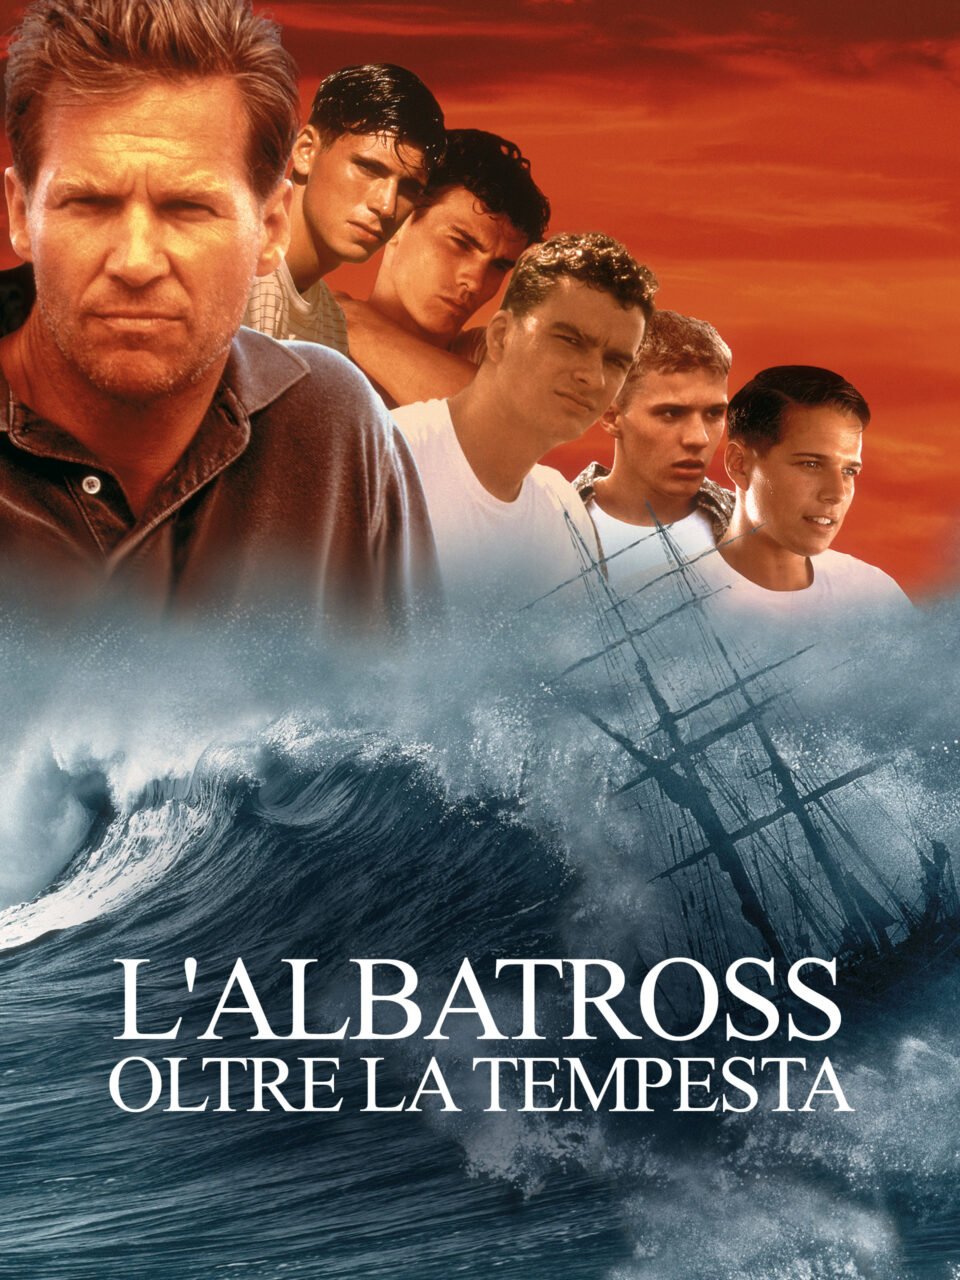 Film Tv 12 dicembre. Ridley Scott in prime time con L'albatross, al cinema con House of Gucci
La recensione su VigilanzaTv